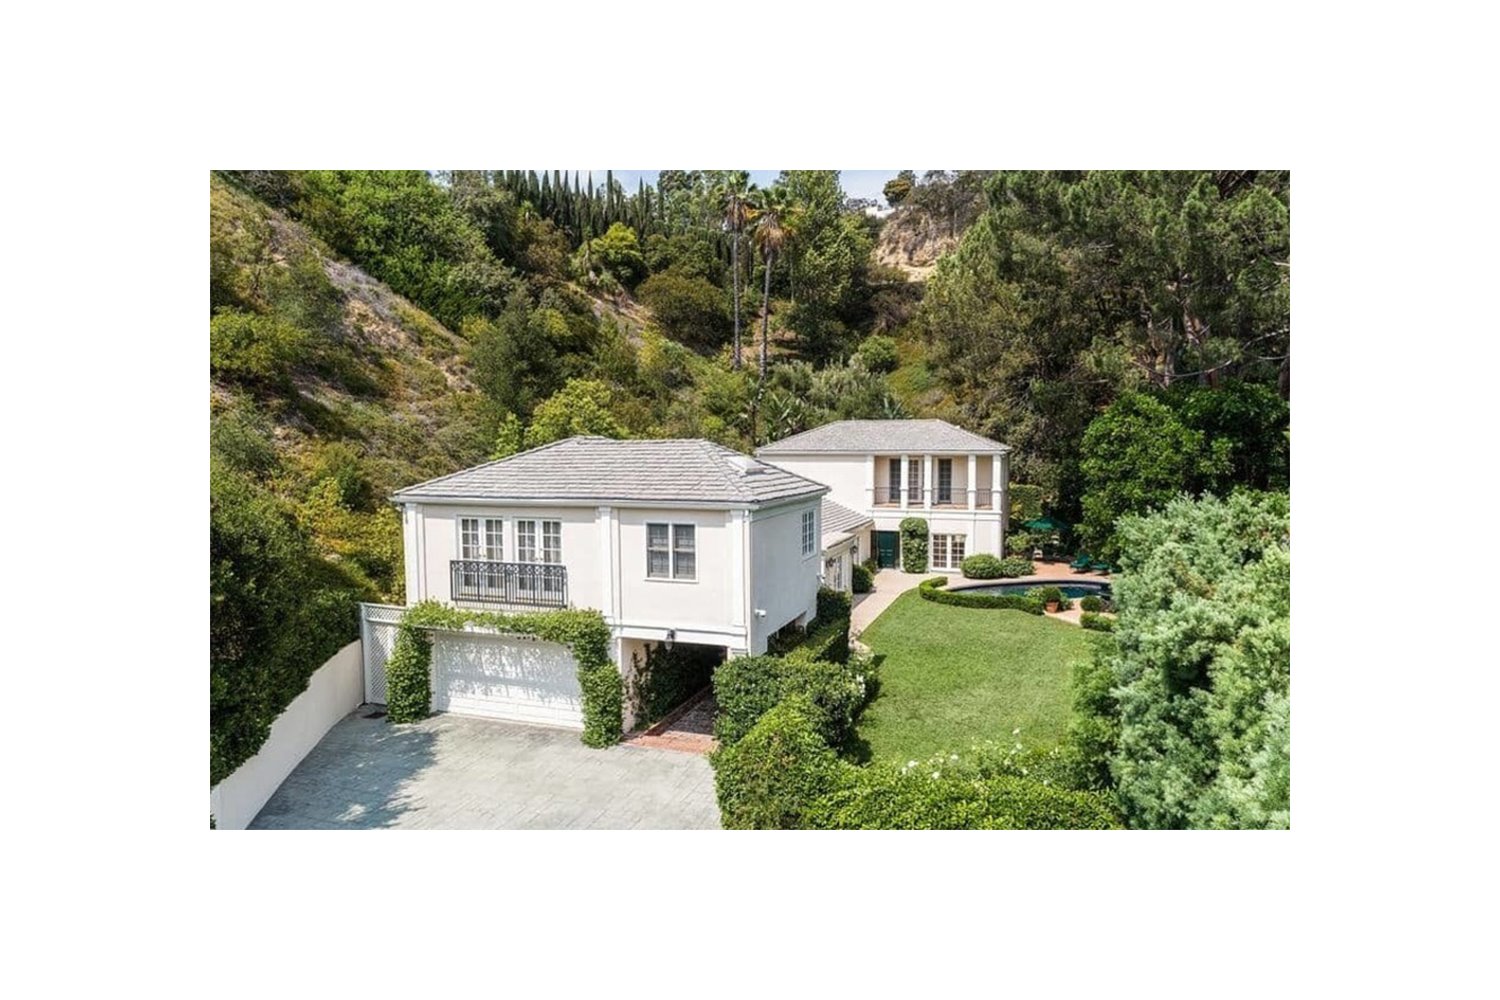 Casa de Katy Perry en Beverly Hills entrada